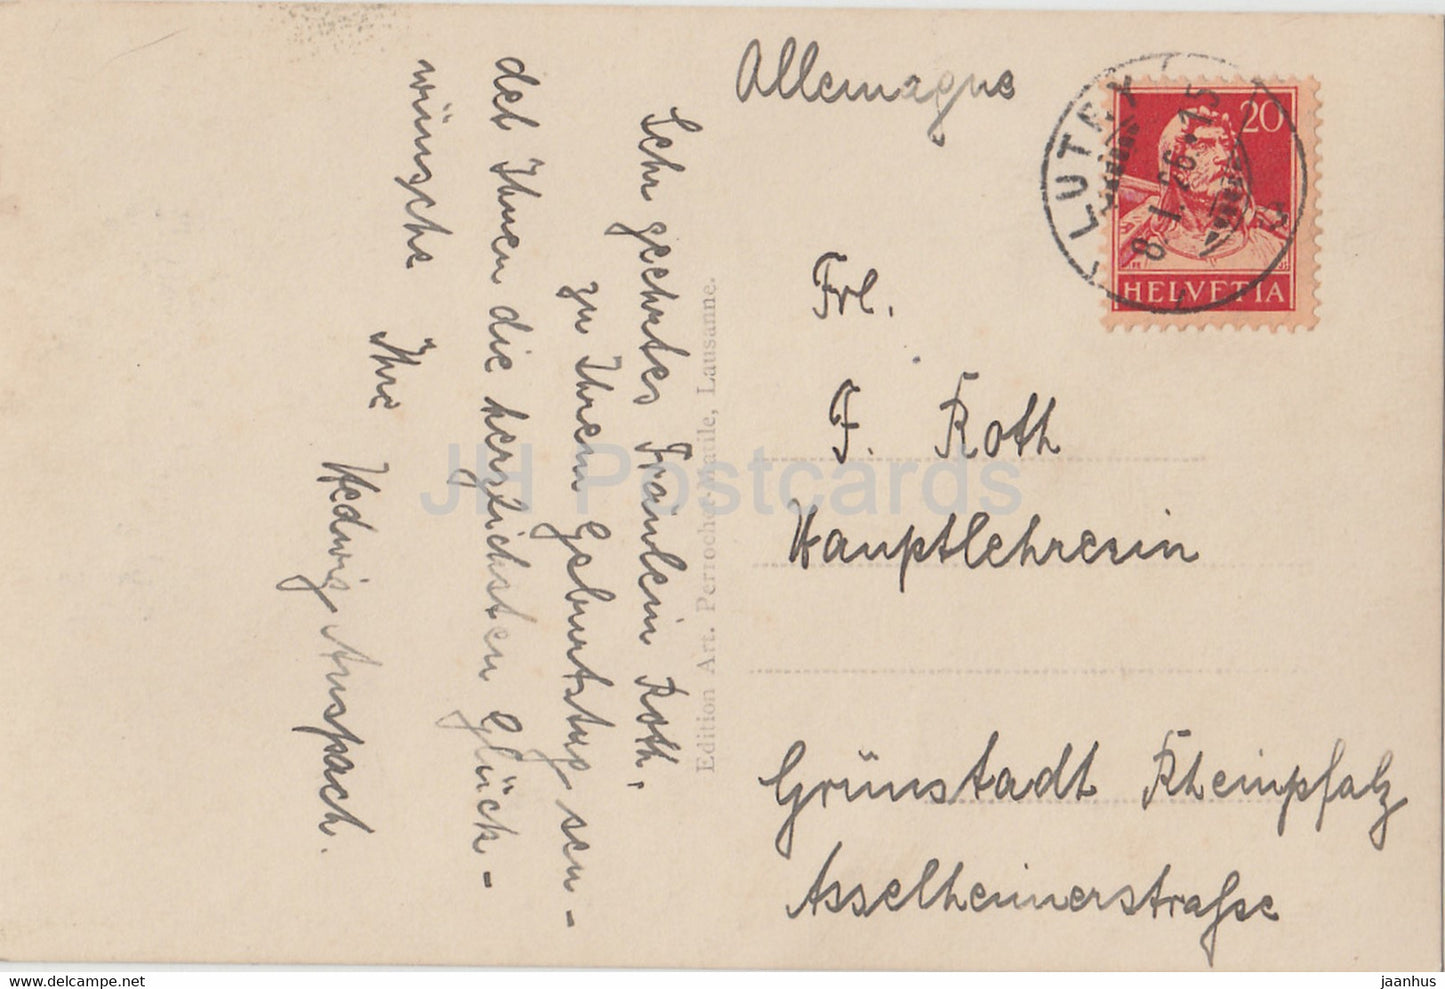 Château de Chillon et Montreux - 7394 - carte postale ancienne - 1926 - Suisse - occasion